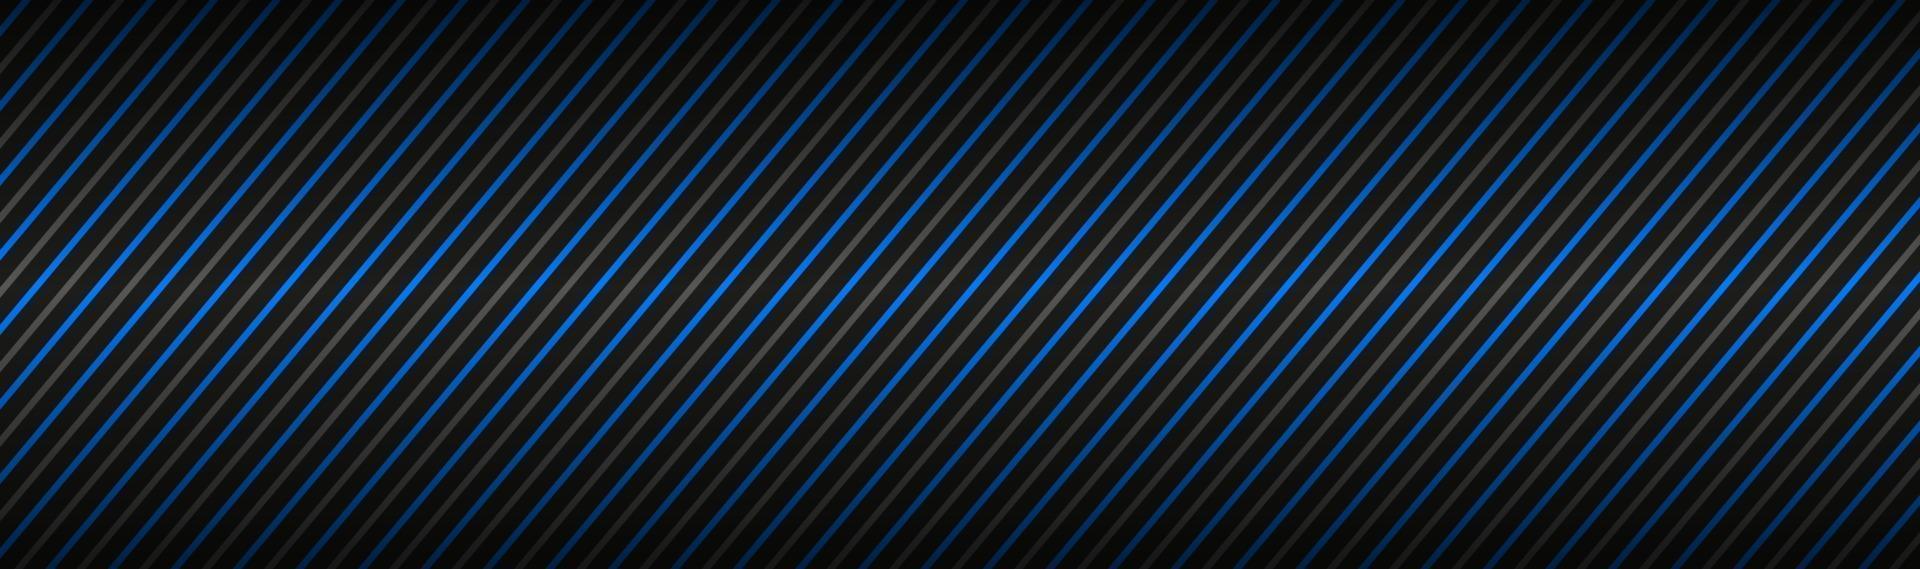 en-tête abstrait sombre avec des lignes diagonales à rayures bleues et grises et des bandes bannière d'illustration vectorielle vecteur